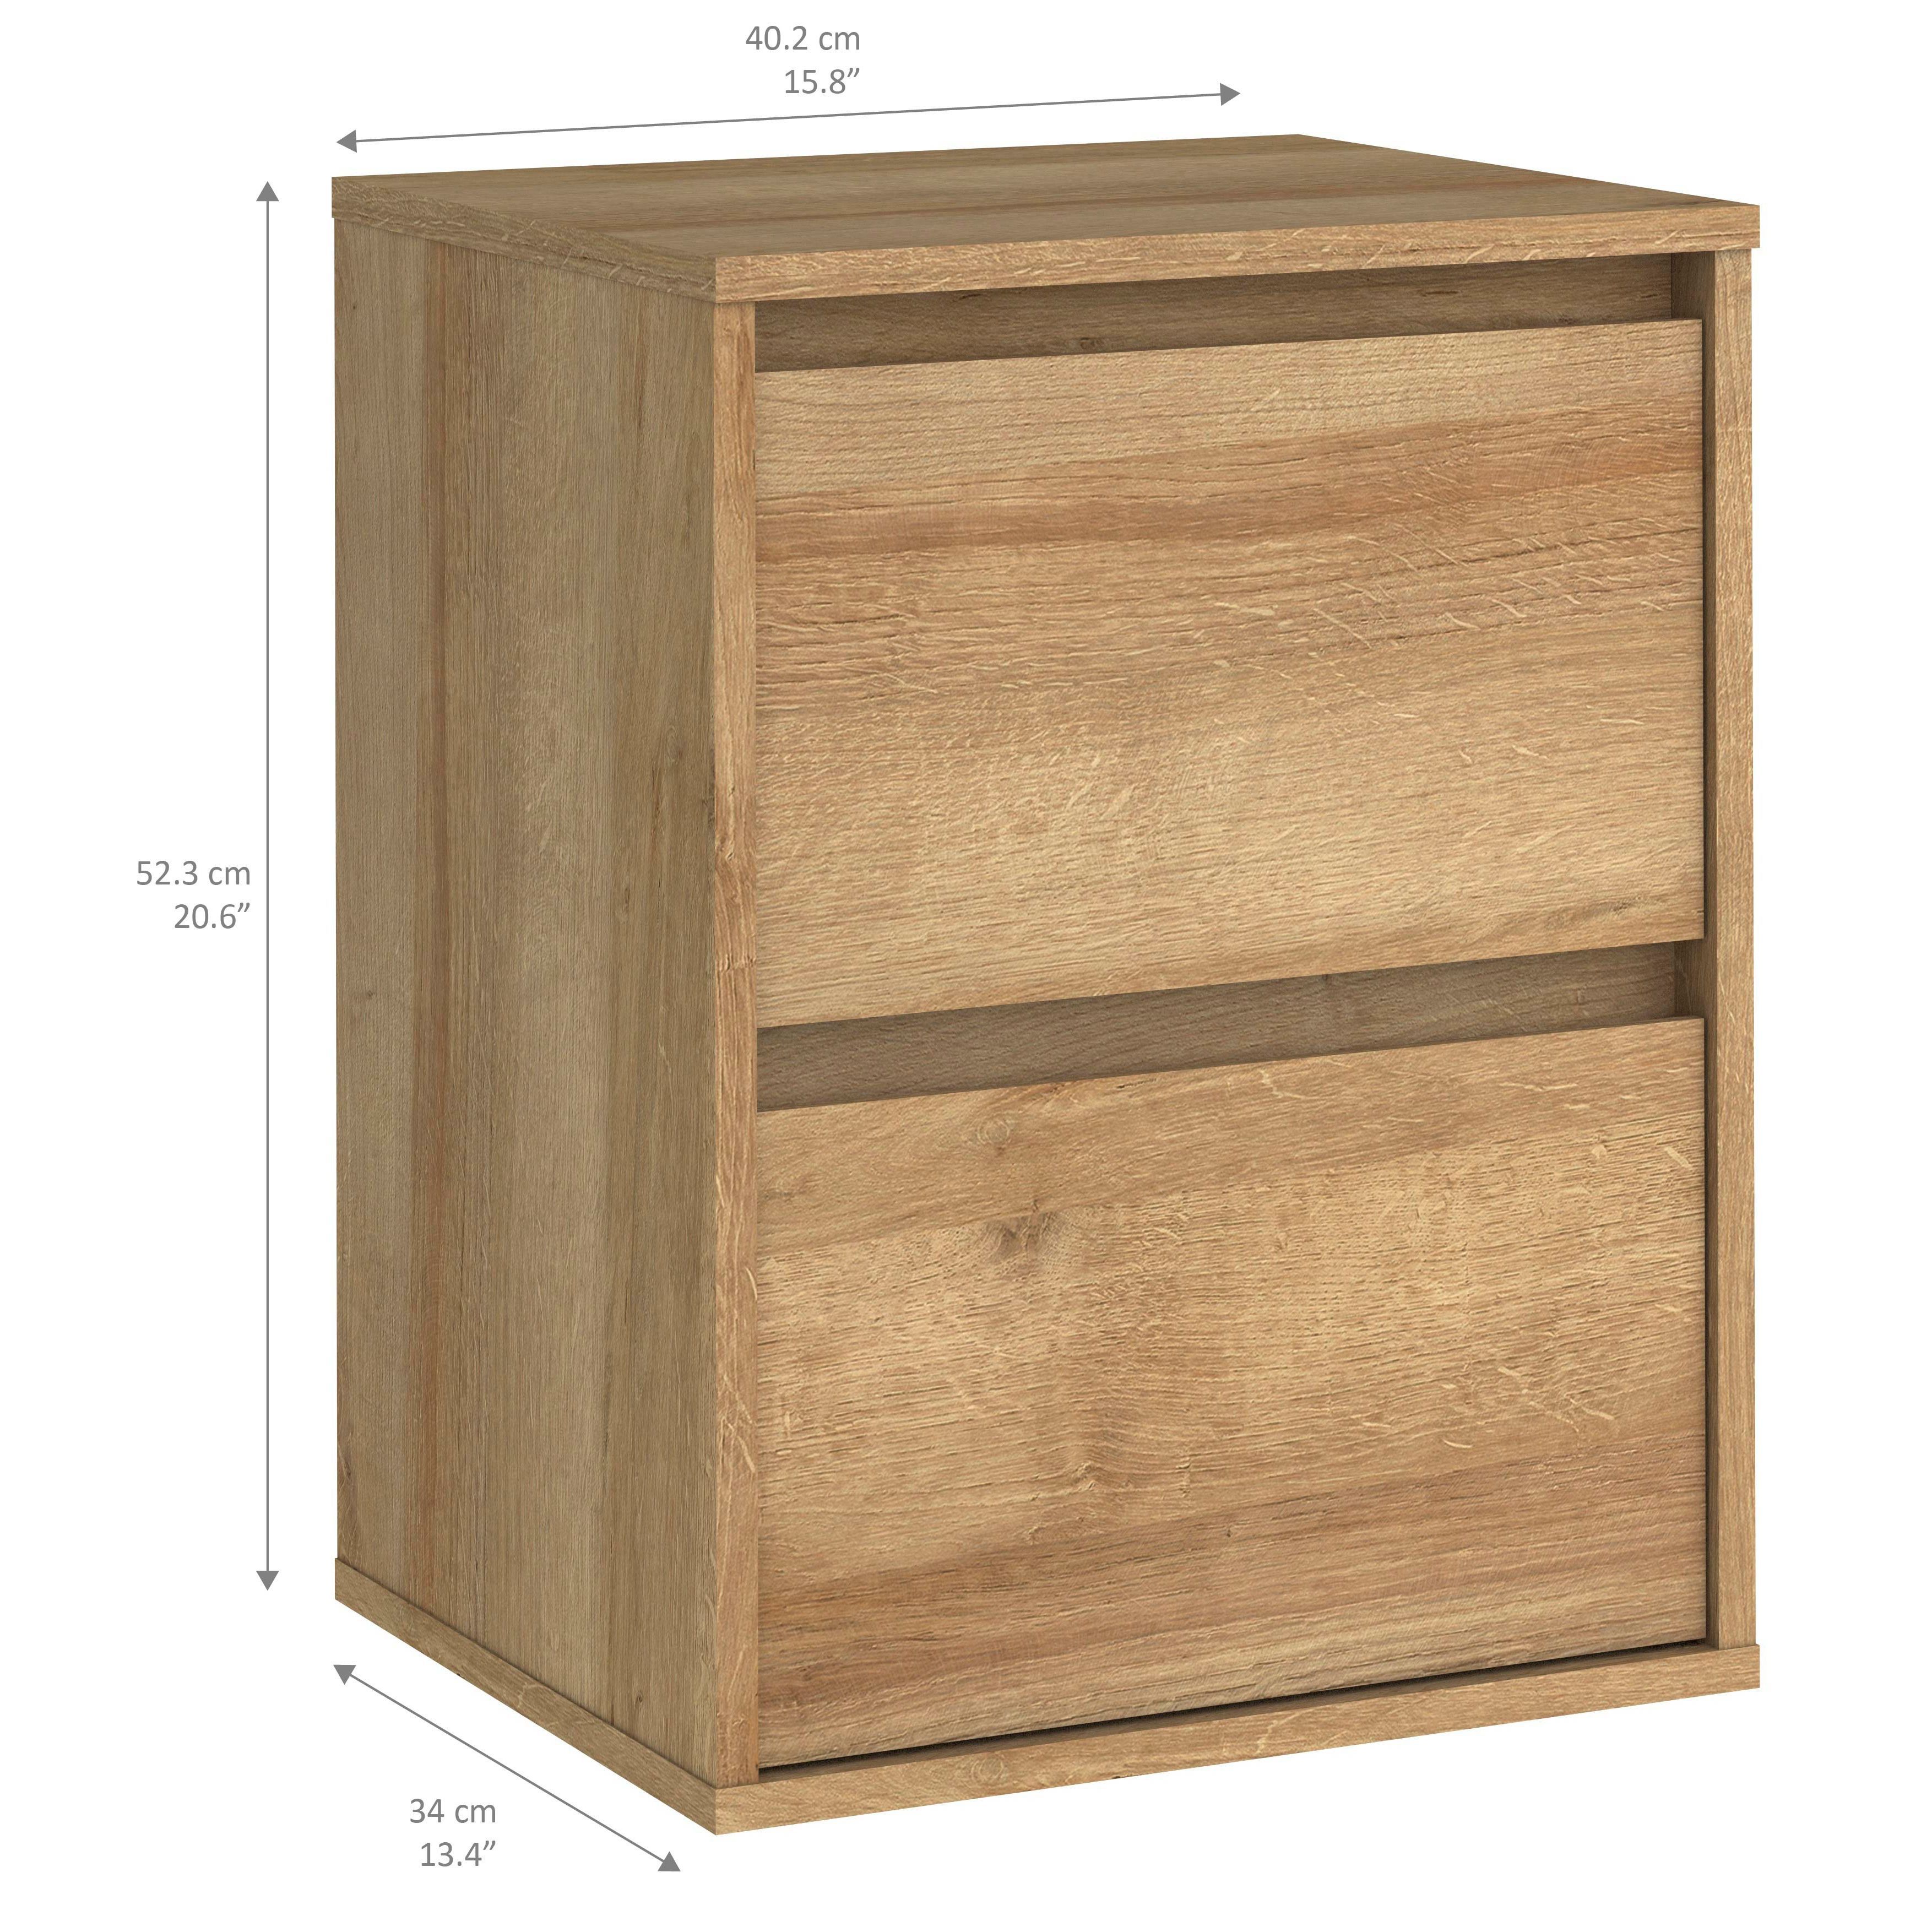 Pattinson Oak effect 2 Drawer Bedside chest (H)52.3cm (W)40.2cm (D)34cm, Set of 2